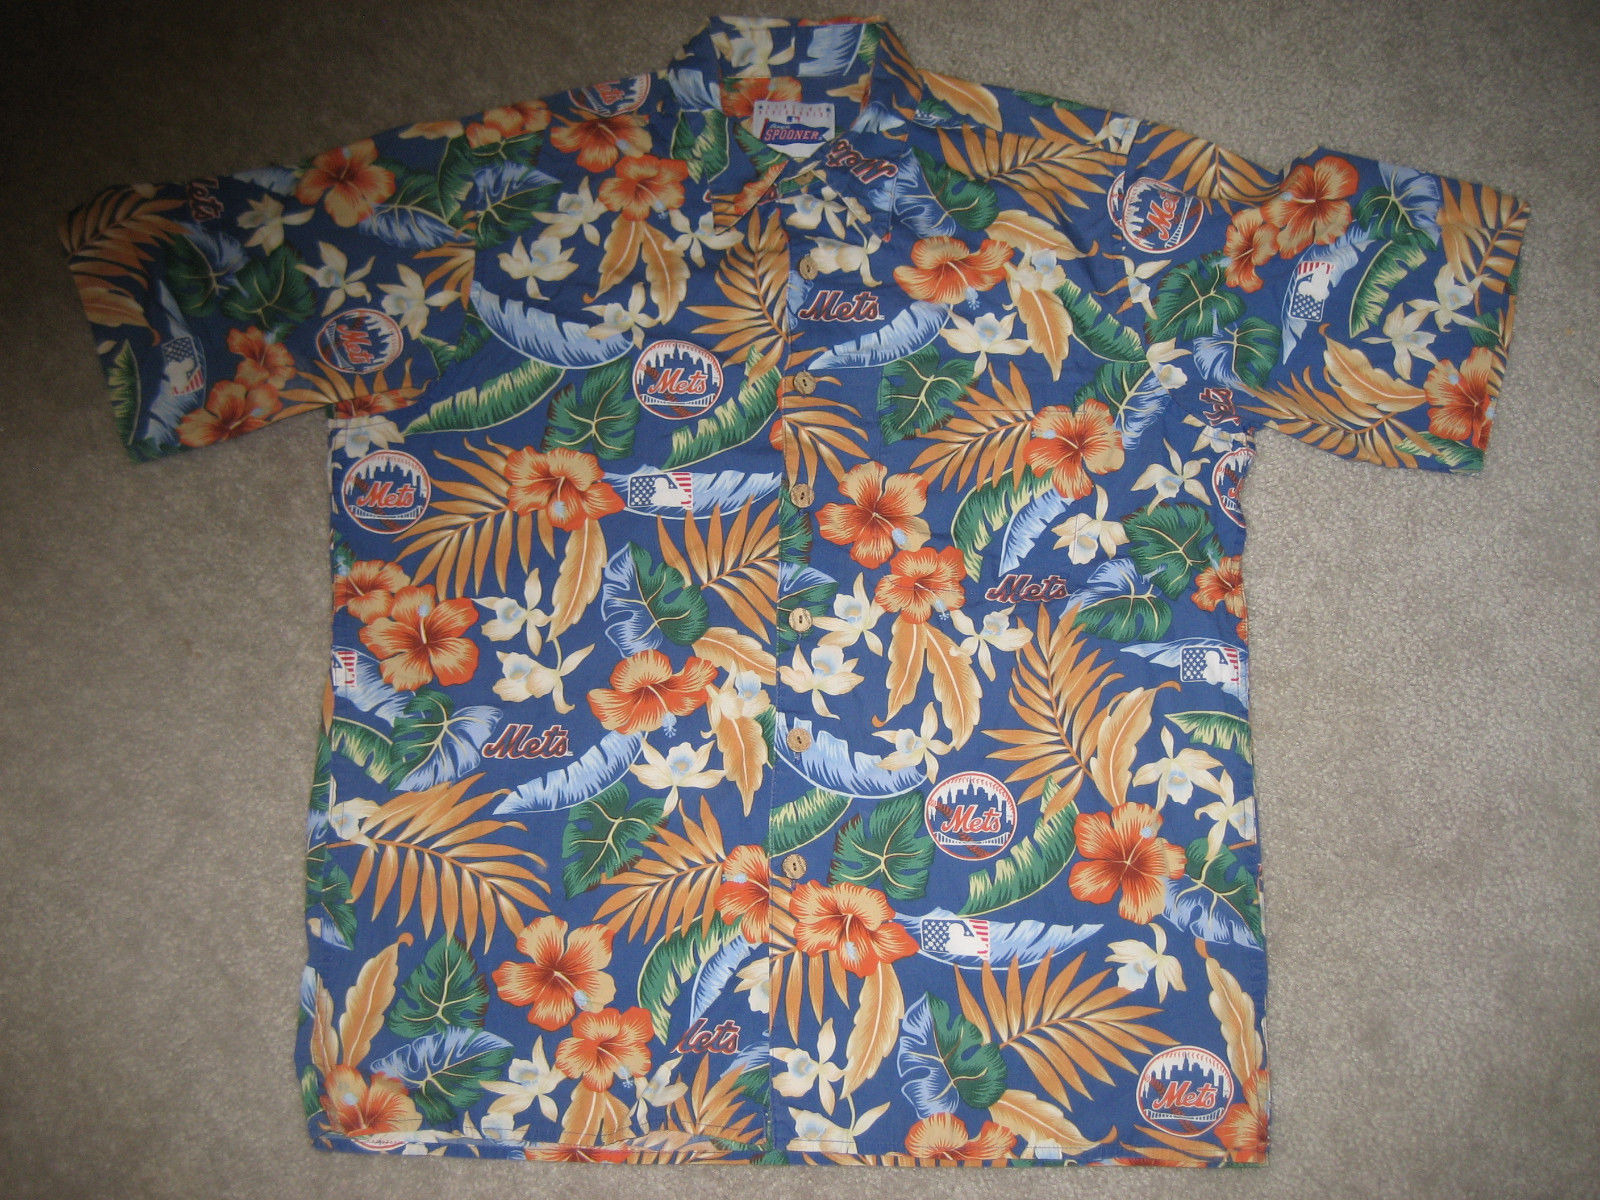 ny mets hawaiian shirt